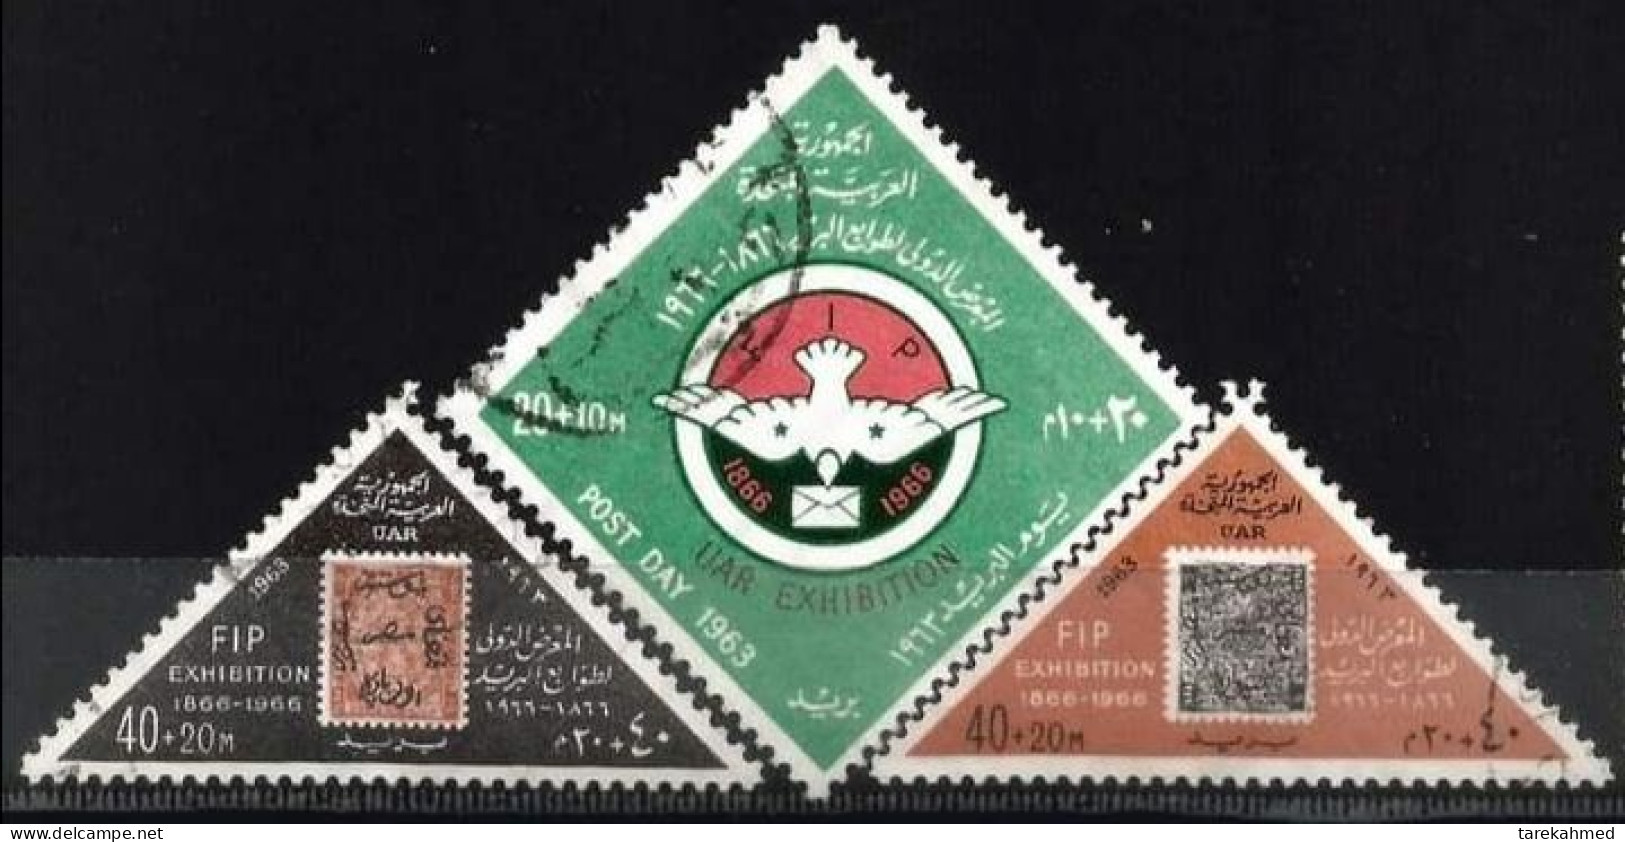 EGYPTE 1963, FIP & UAR Exhibition, YVERT N°555/57, VF - Oblitérés